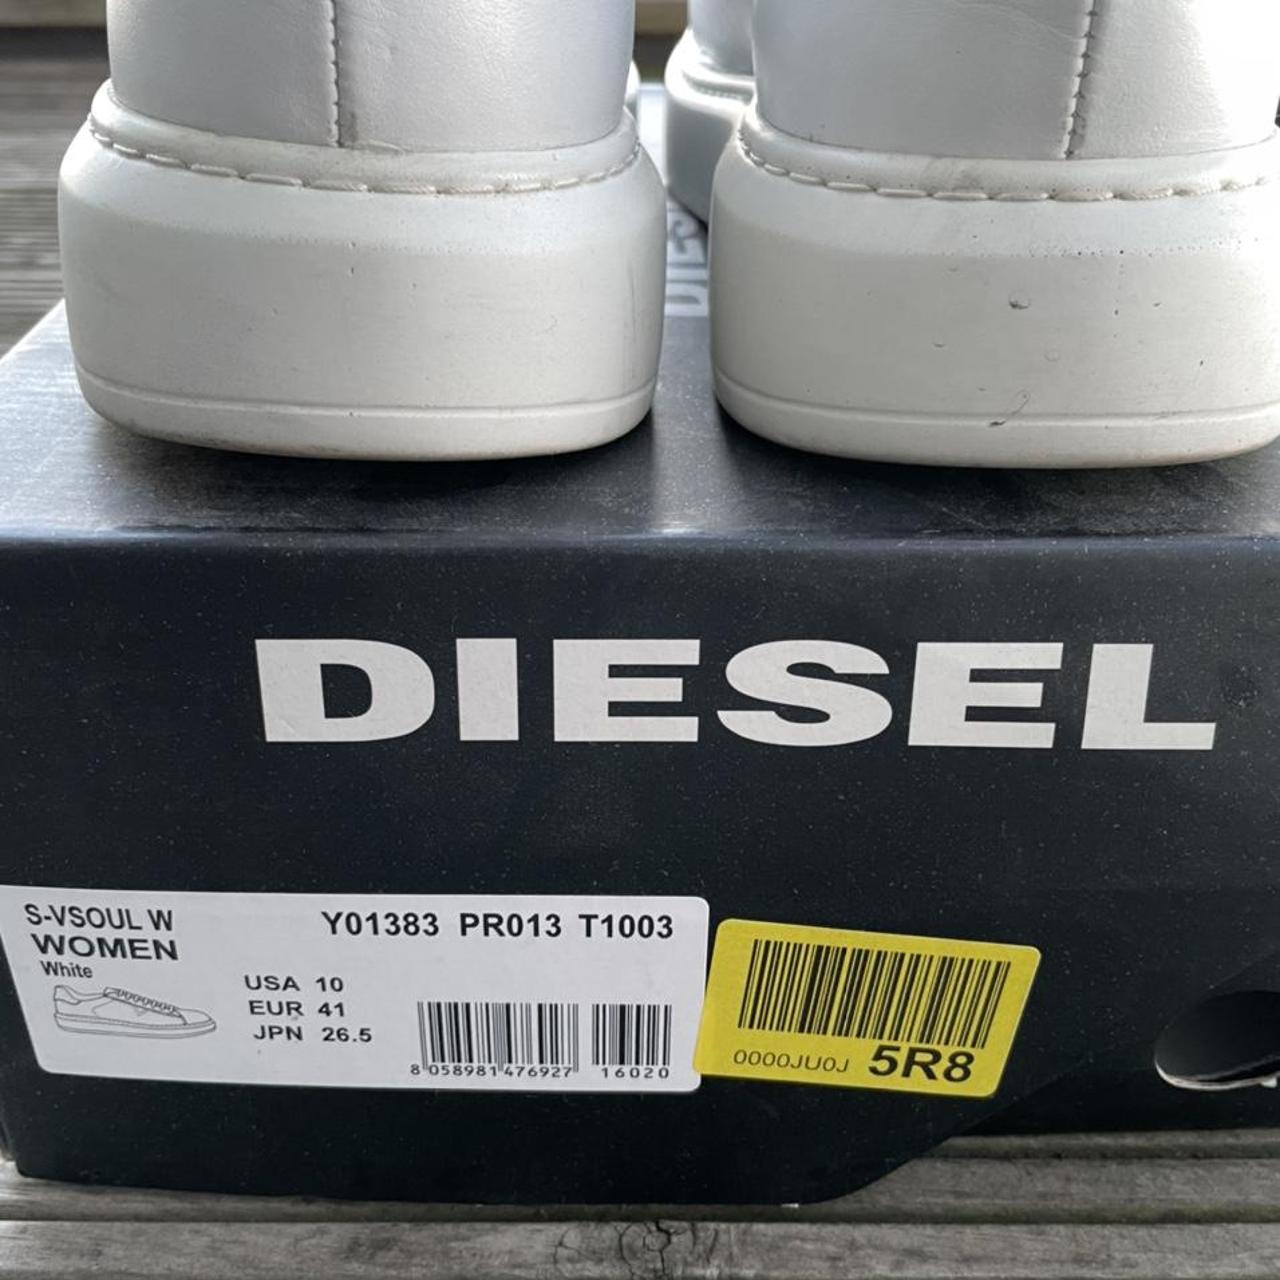 Selling Diesel S-VSOUL Womens Platform Sneakers Size...